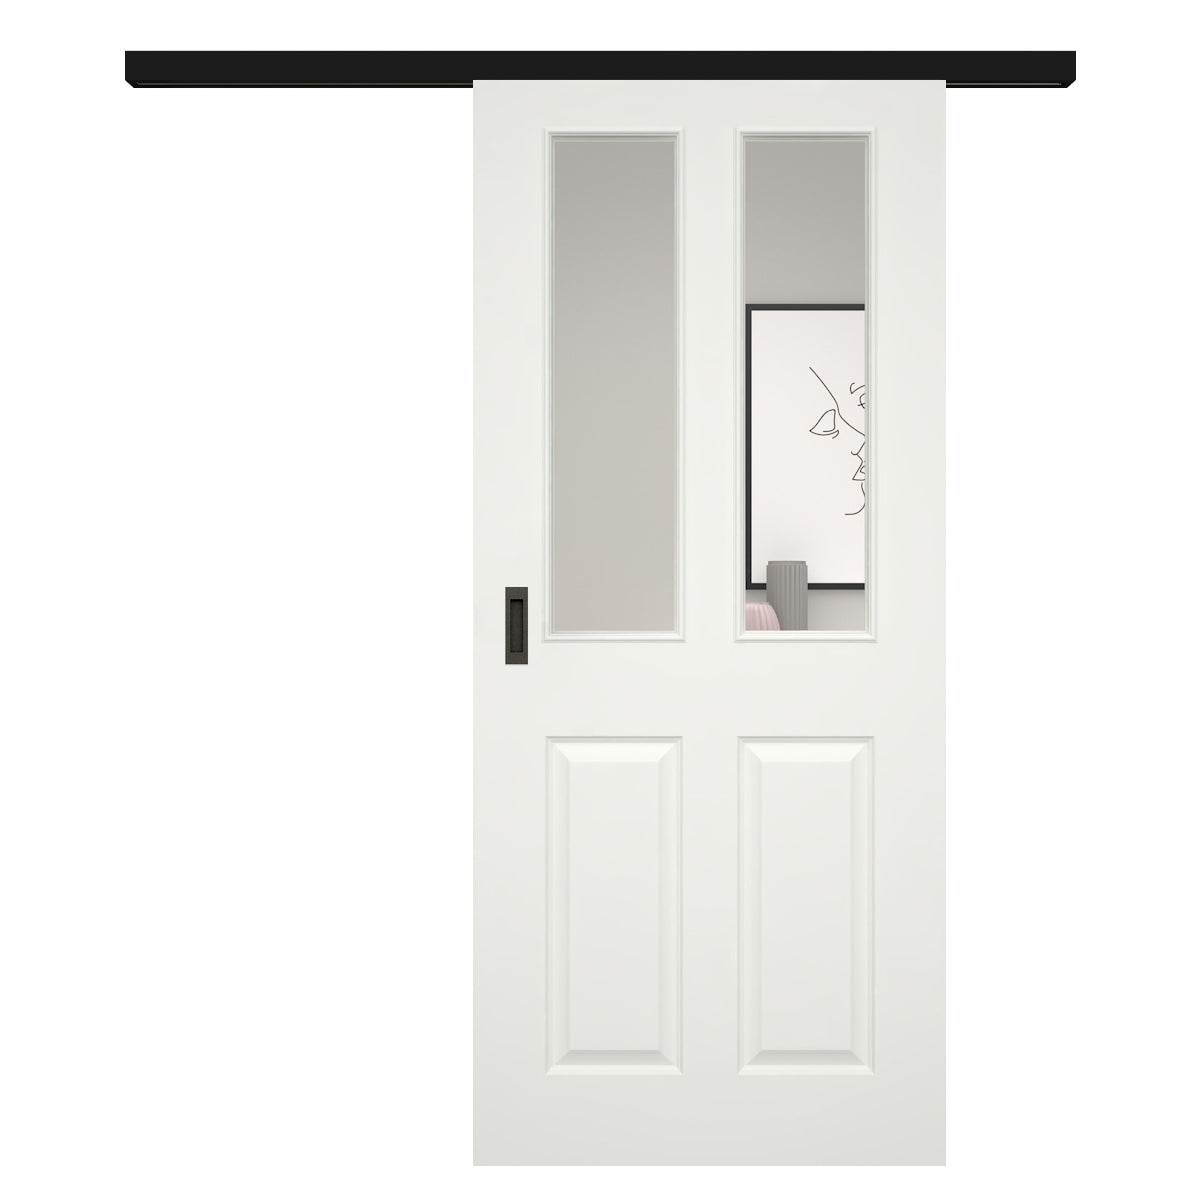 Schiebetür für Set mit schwarzem Laufkasten soft-weiß Stiltür mit 4 Kassetten und Lichtausschnitt - Modell Stiltür K41LA2